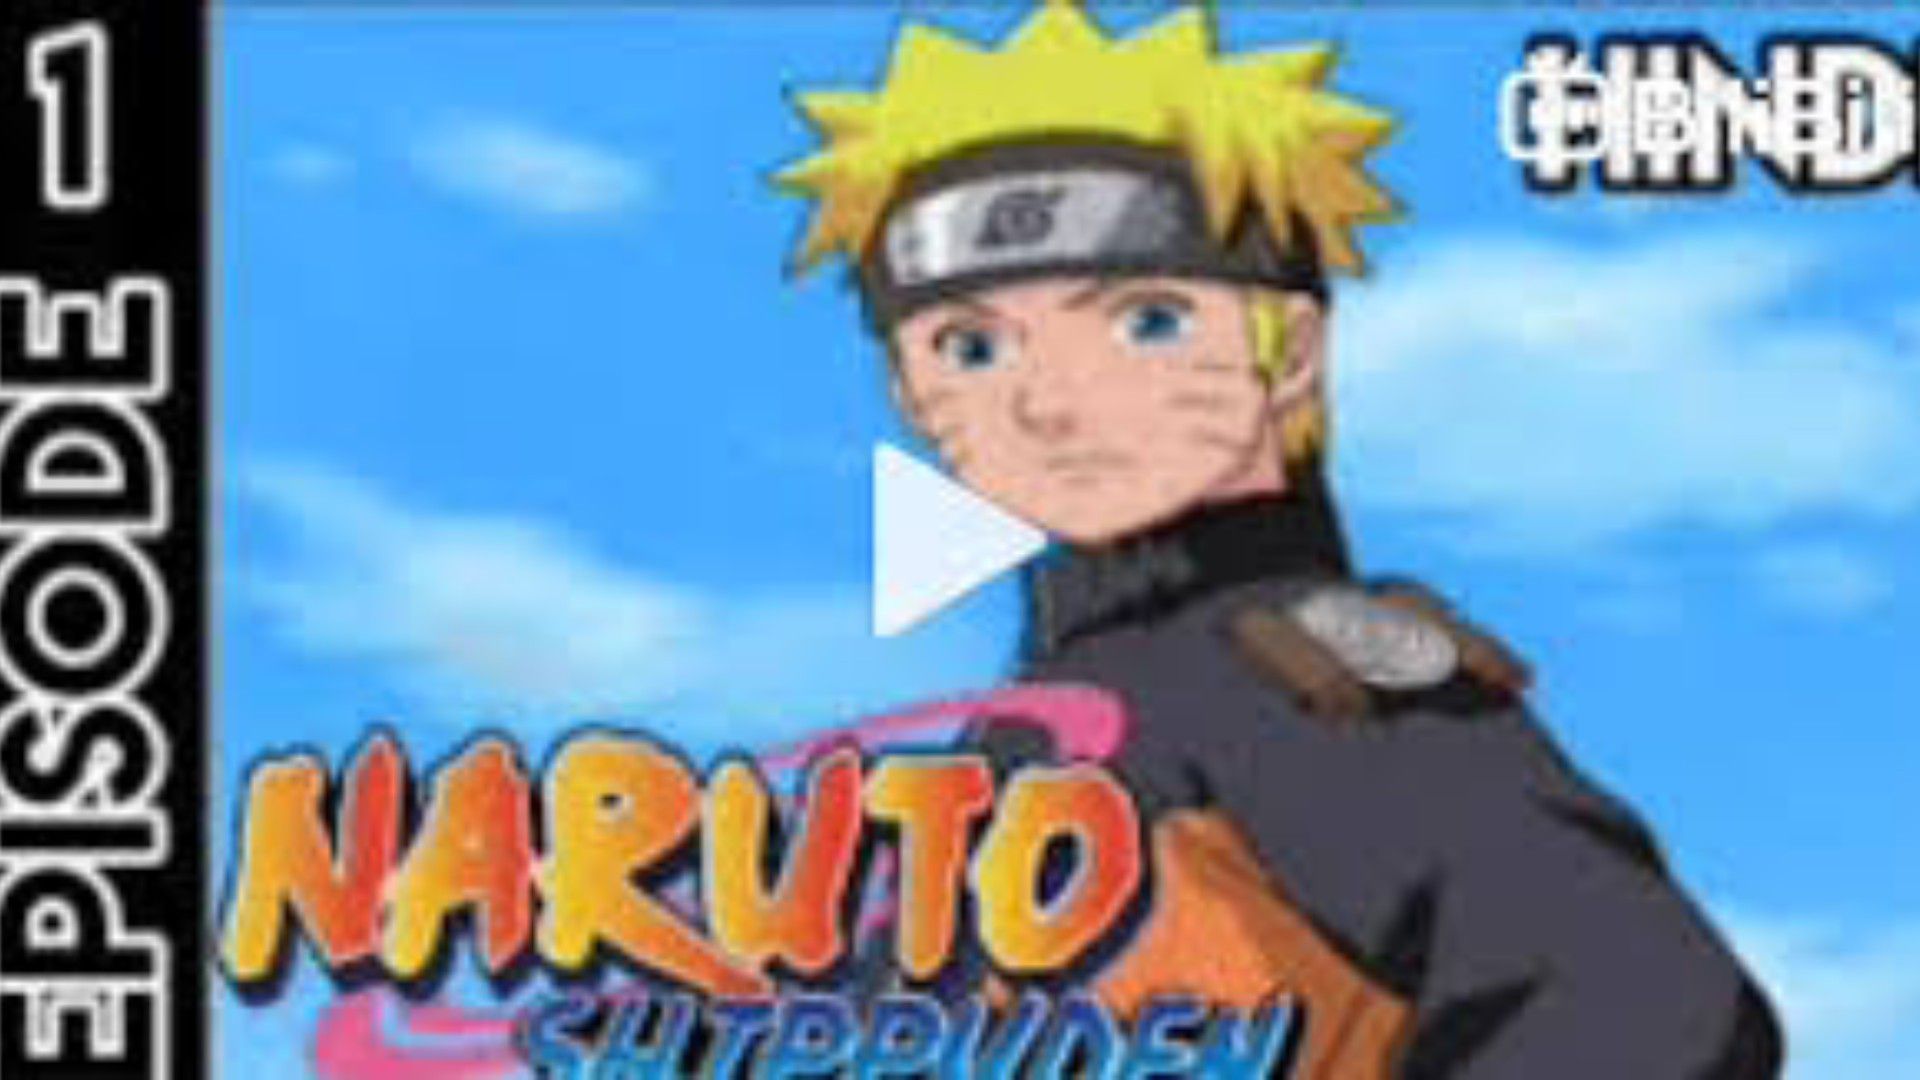 NARUTO Episode 01 Naruto in HD 